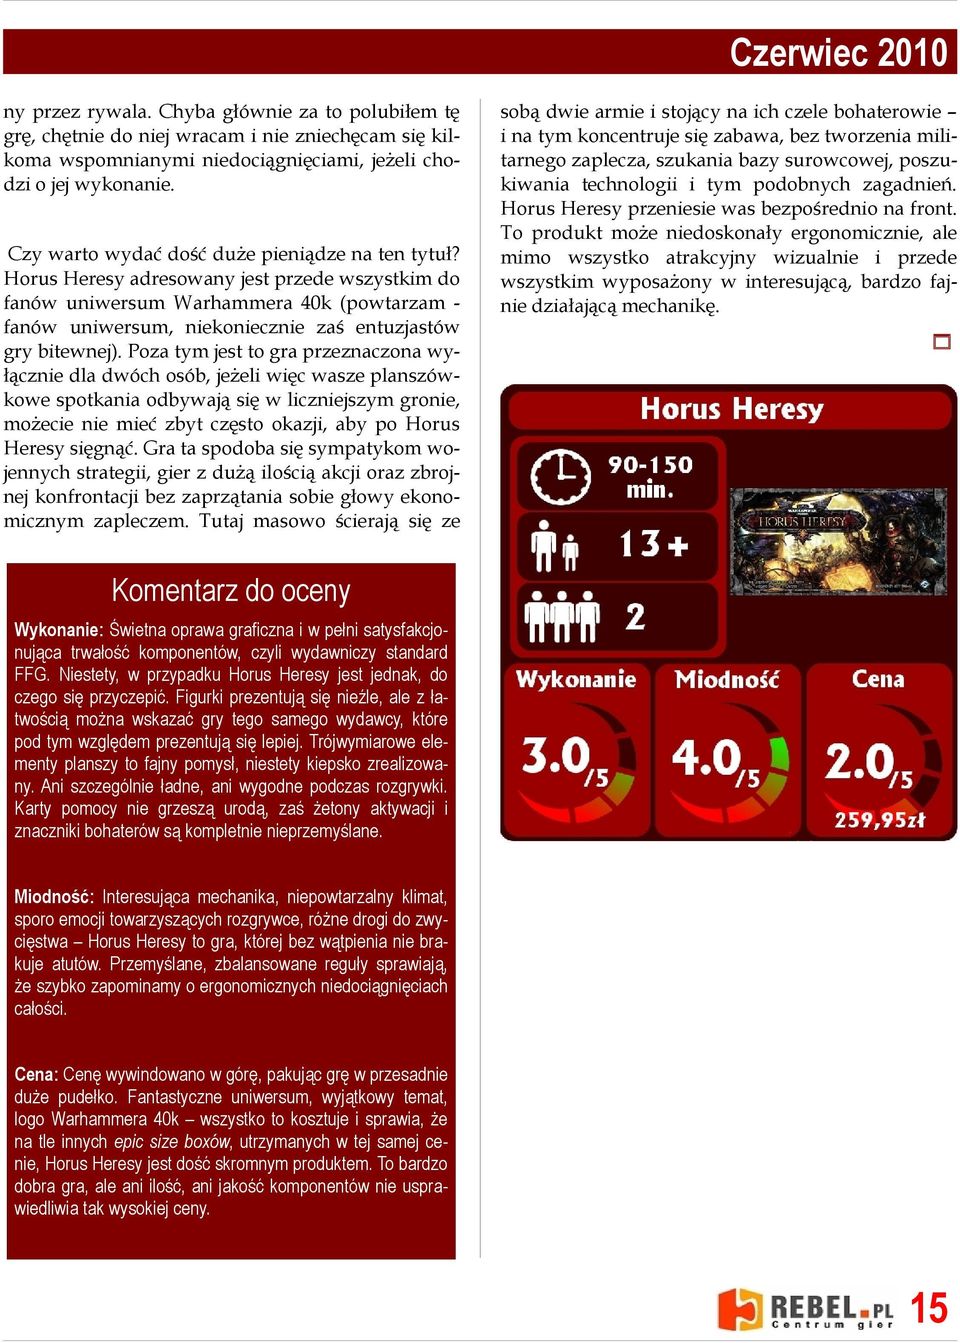 Horus Heresy adresowany jest przede wszystkim do fanów uniwersum Warhammera 40k (powtarzam fanów uniwersum, niekoniecznie zaś entuzjastów gry bitewnej).